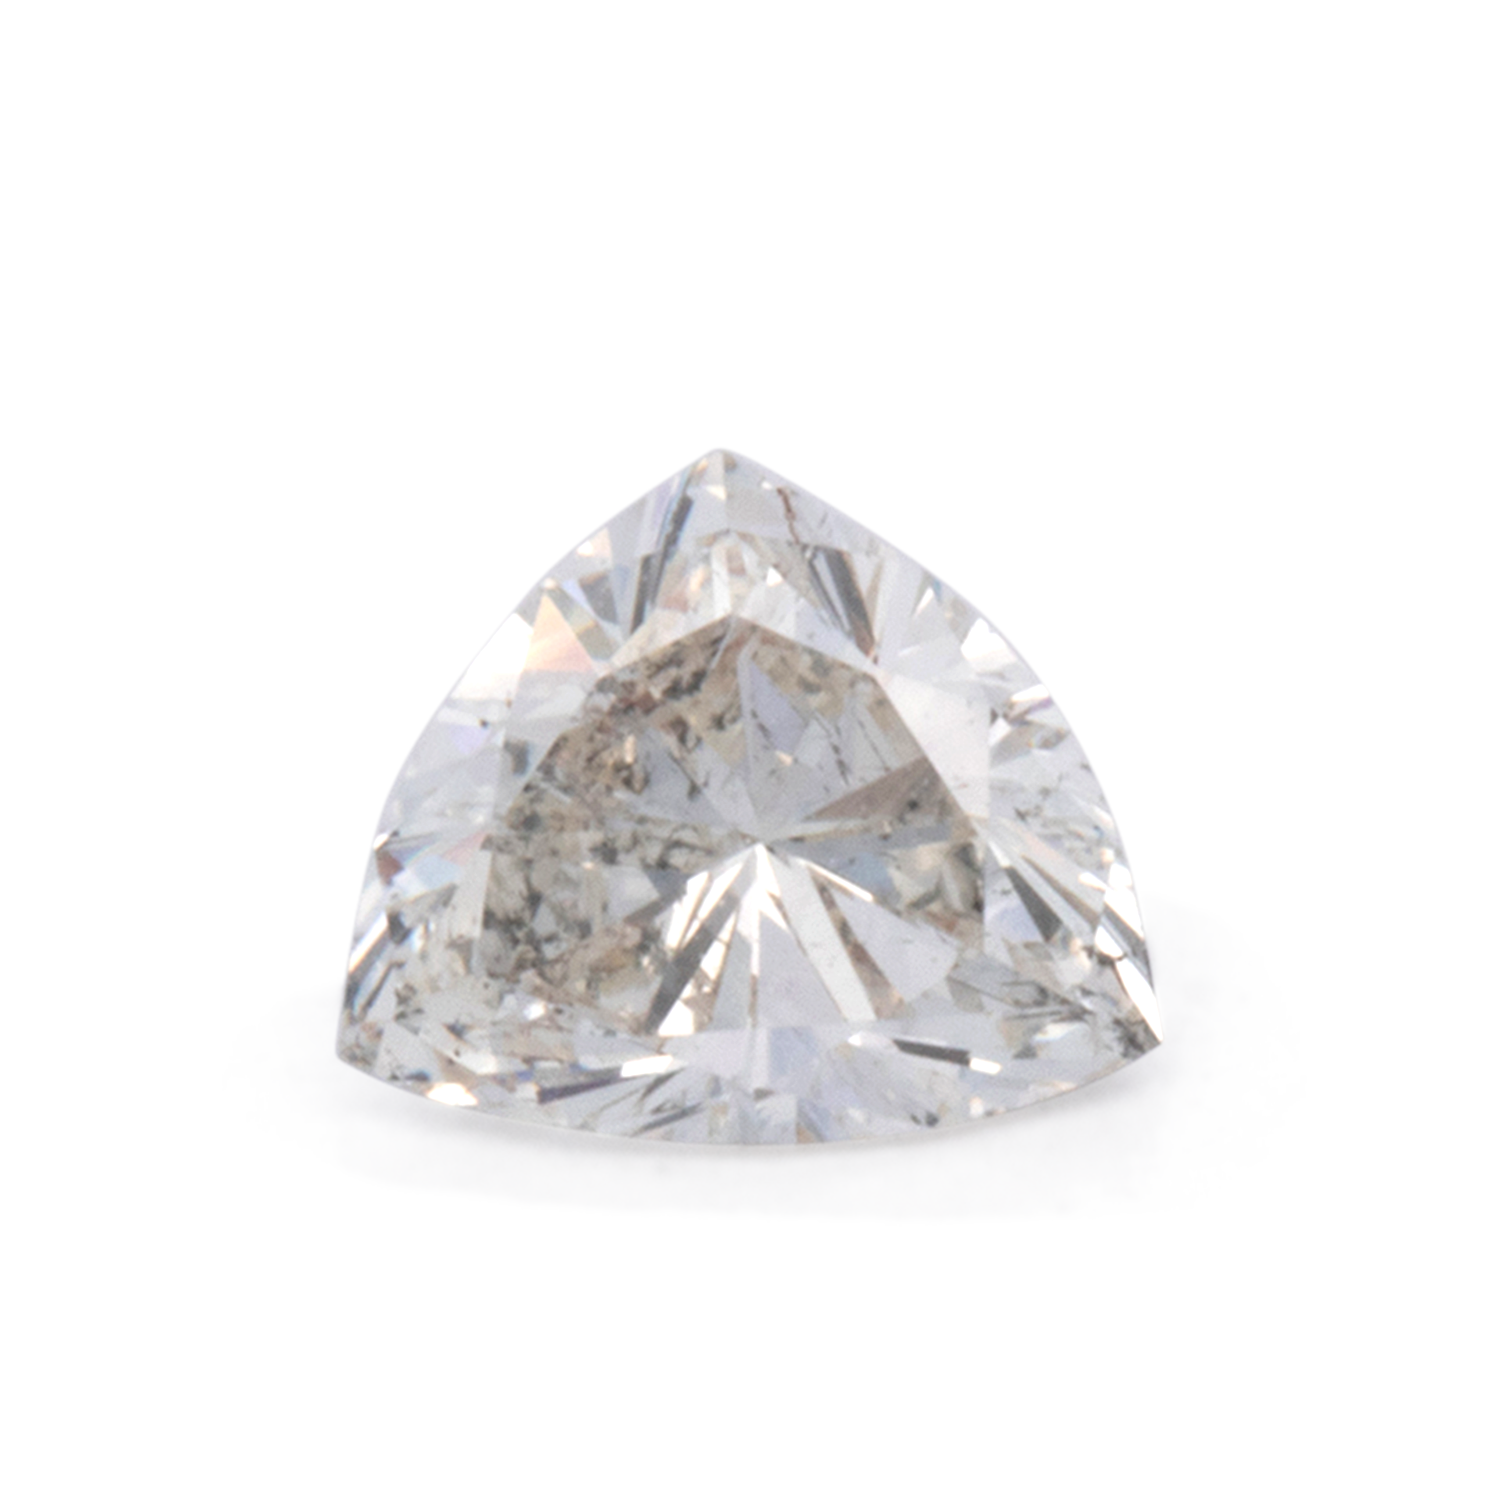 Diamant - leicht getönt weiß, trillion, 5.3x4.5 mm, 0.35 cts, Nr. DT1008